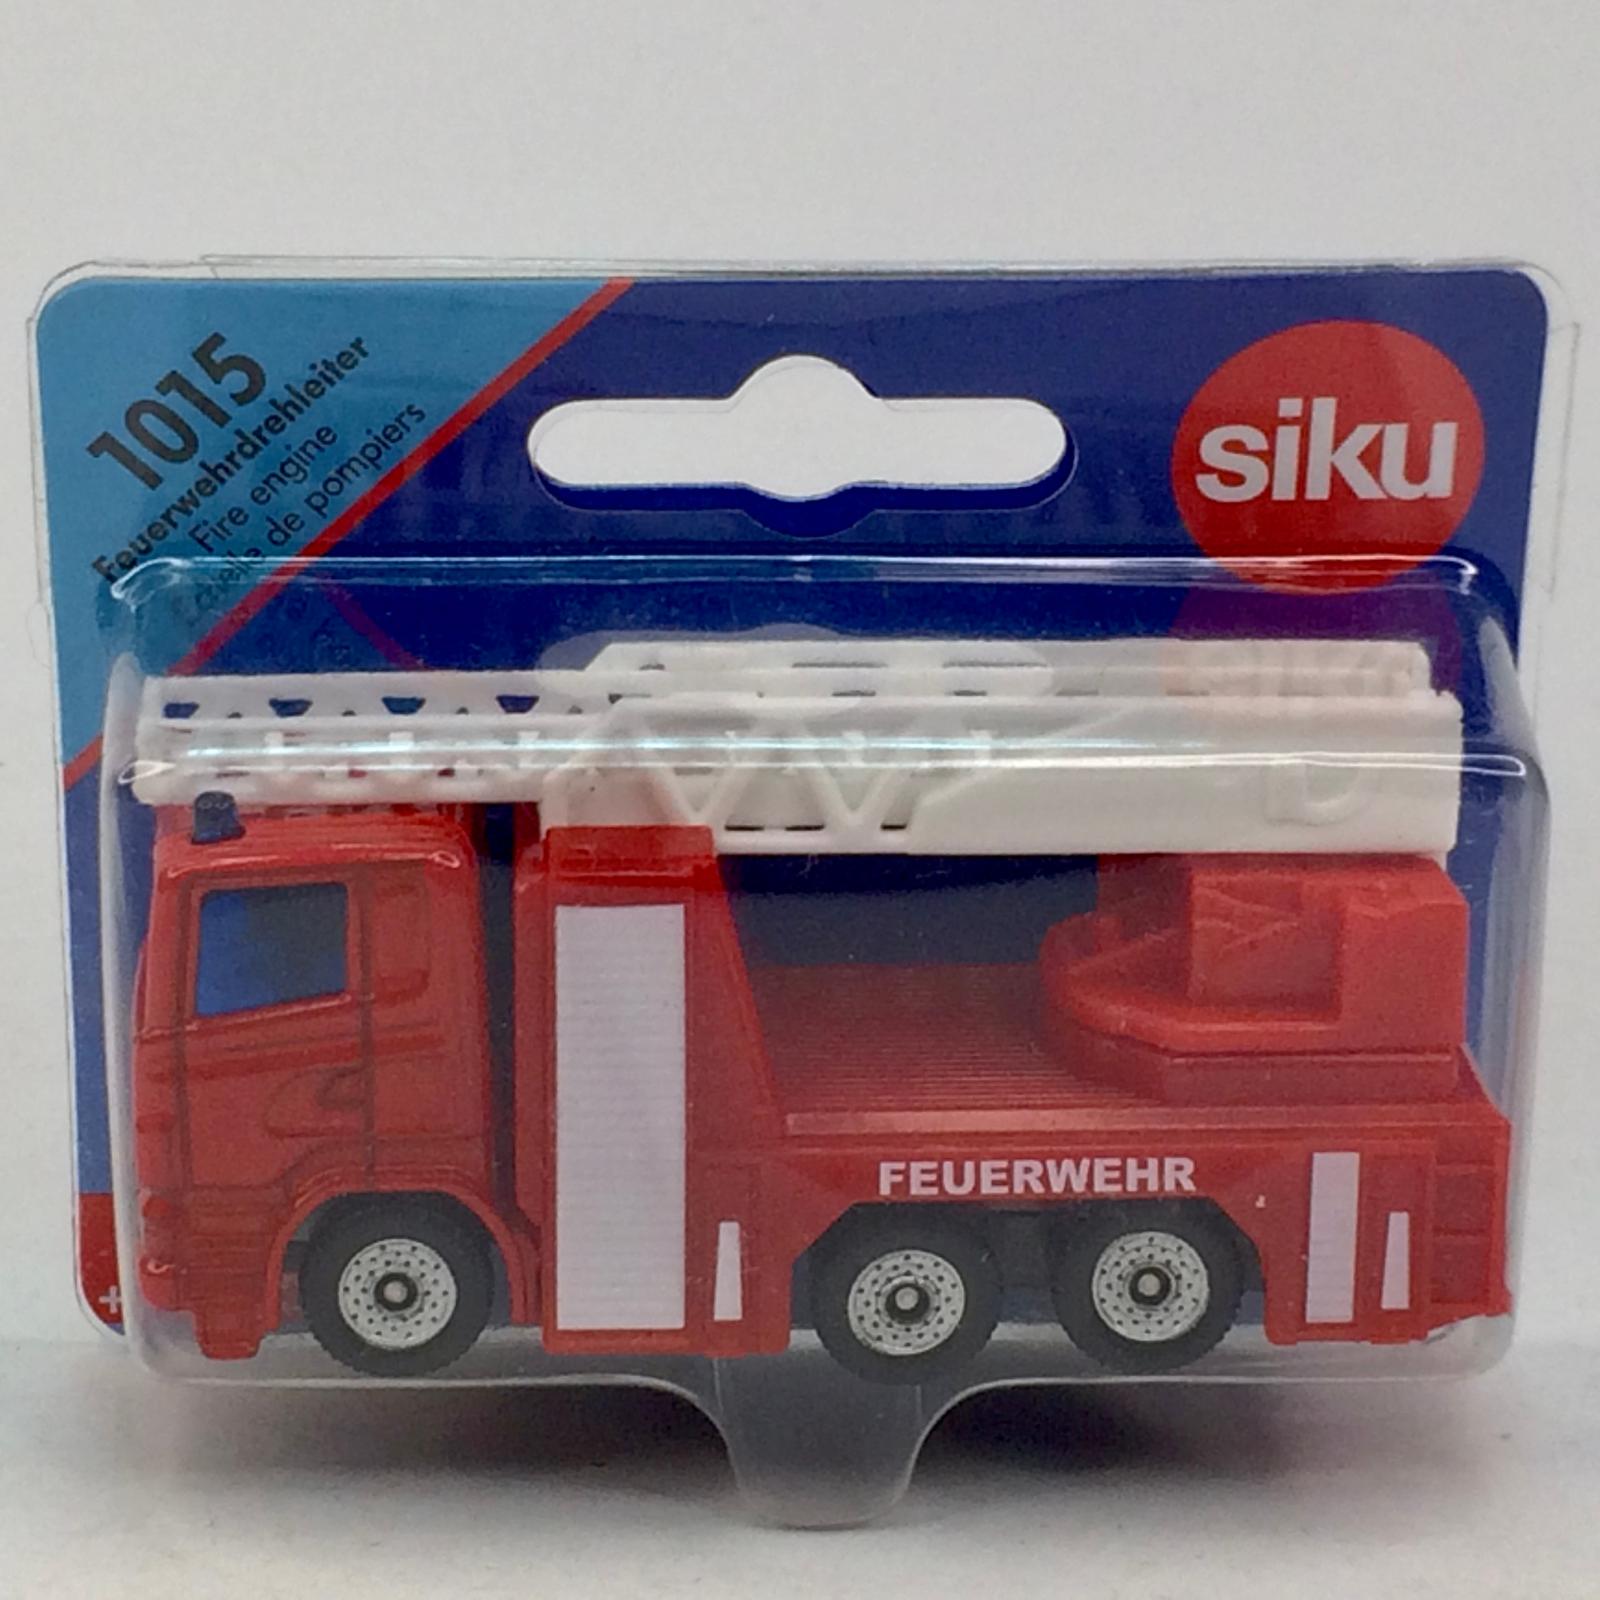 požiarny truck výsuvný rebrík - SIKU #1015 (M40-x) - Modely automobilov